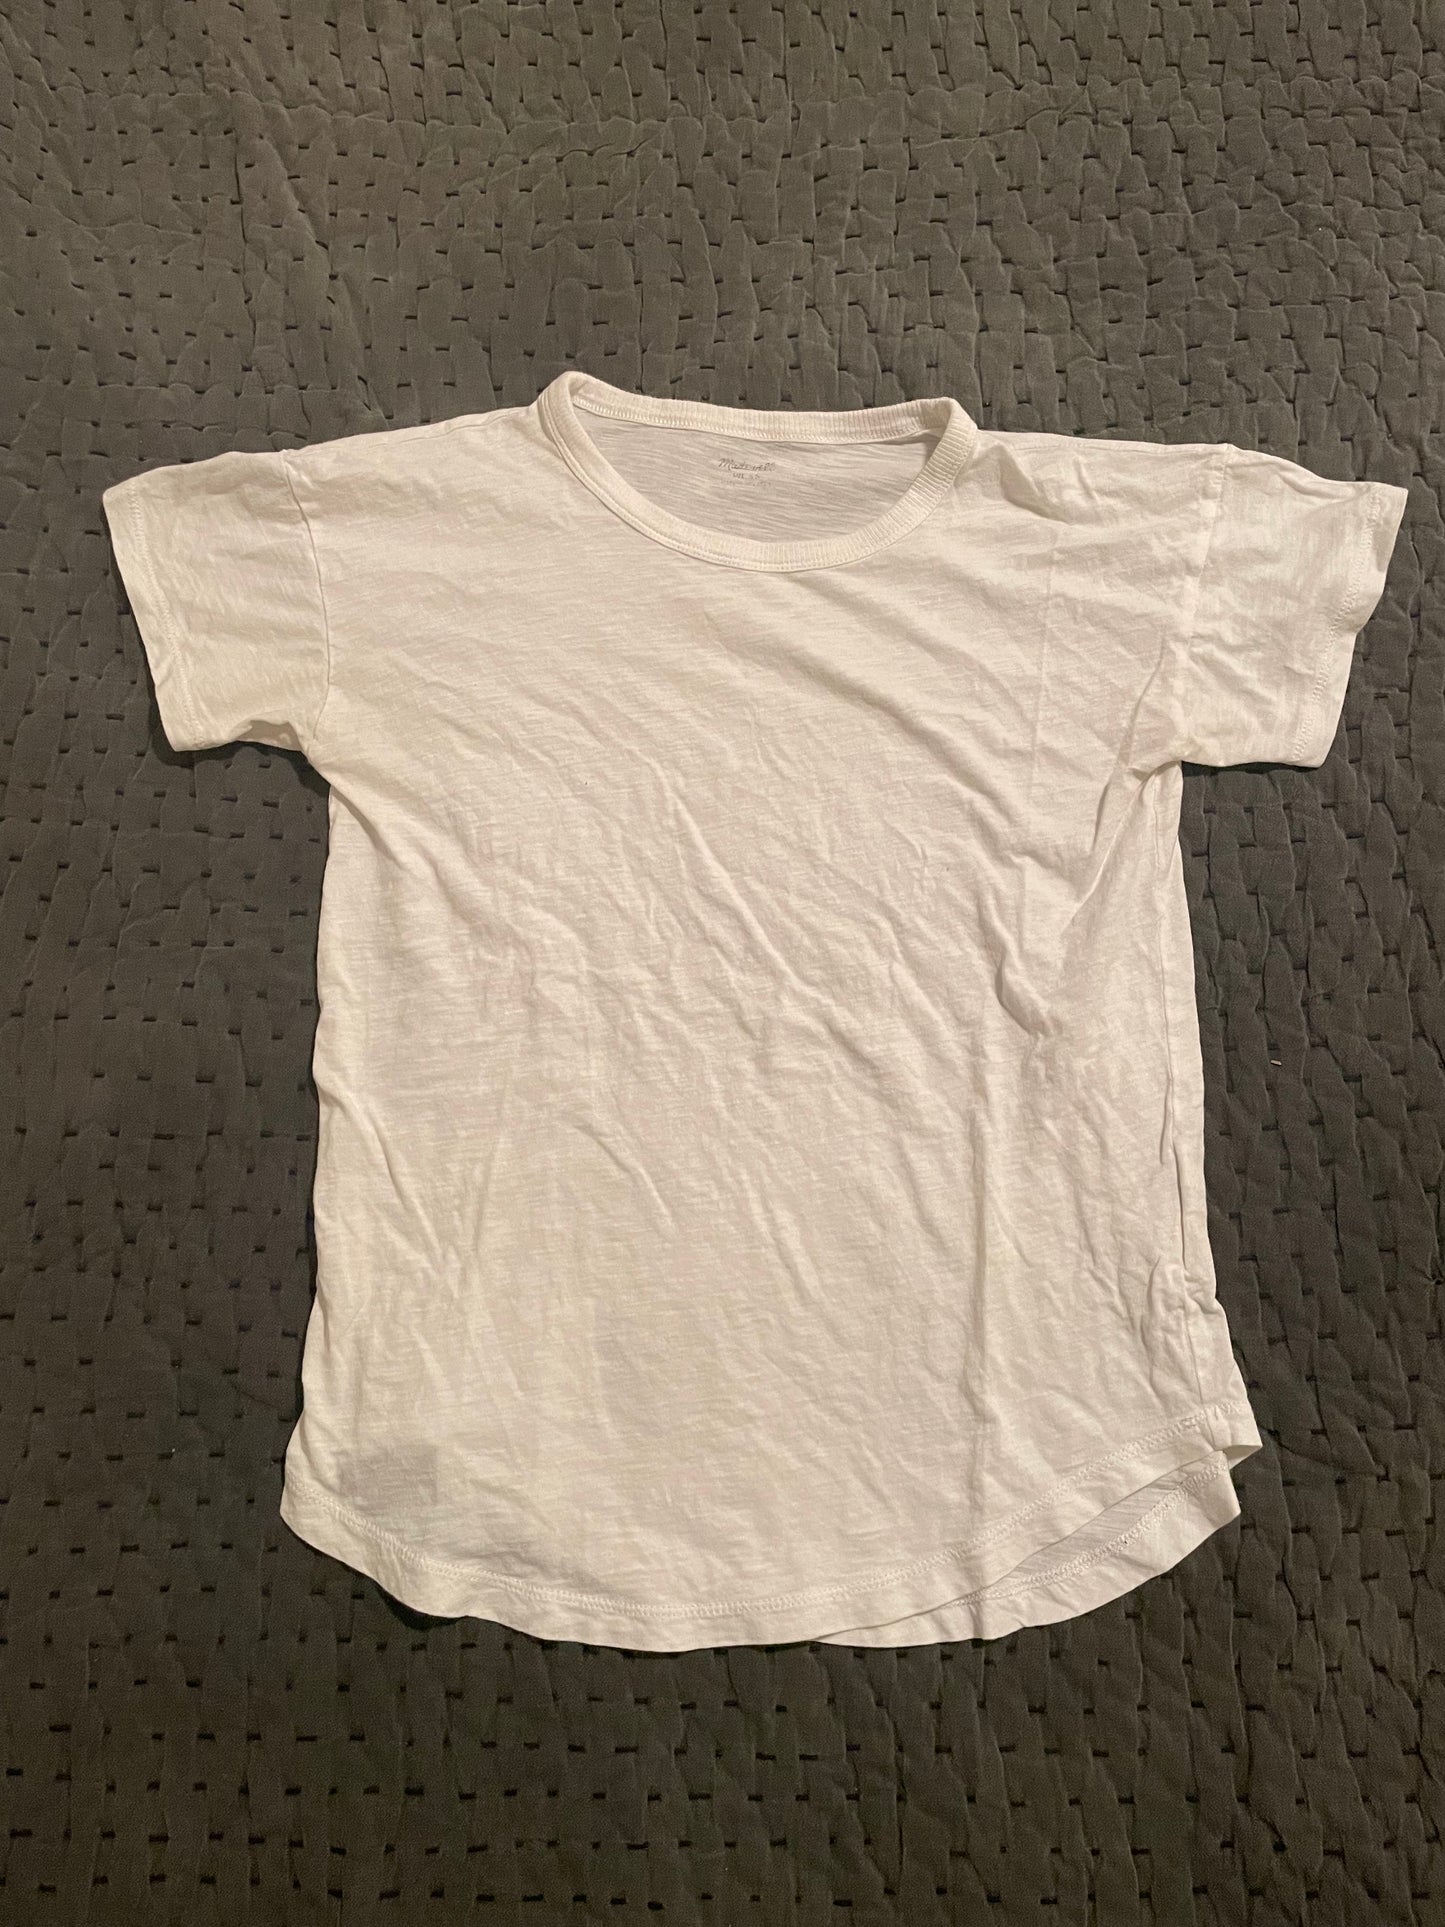 Women’s XS/S T-shirt Bundle